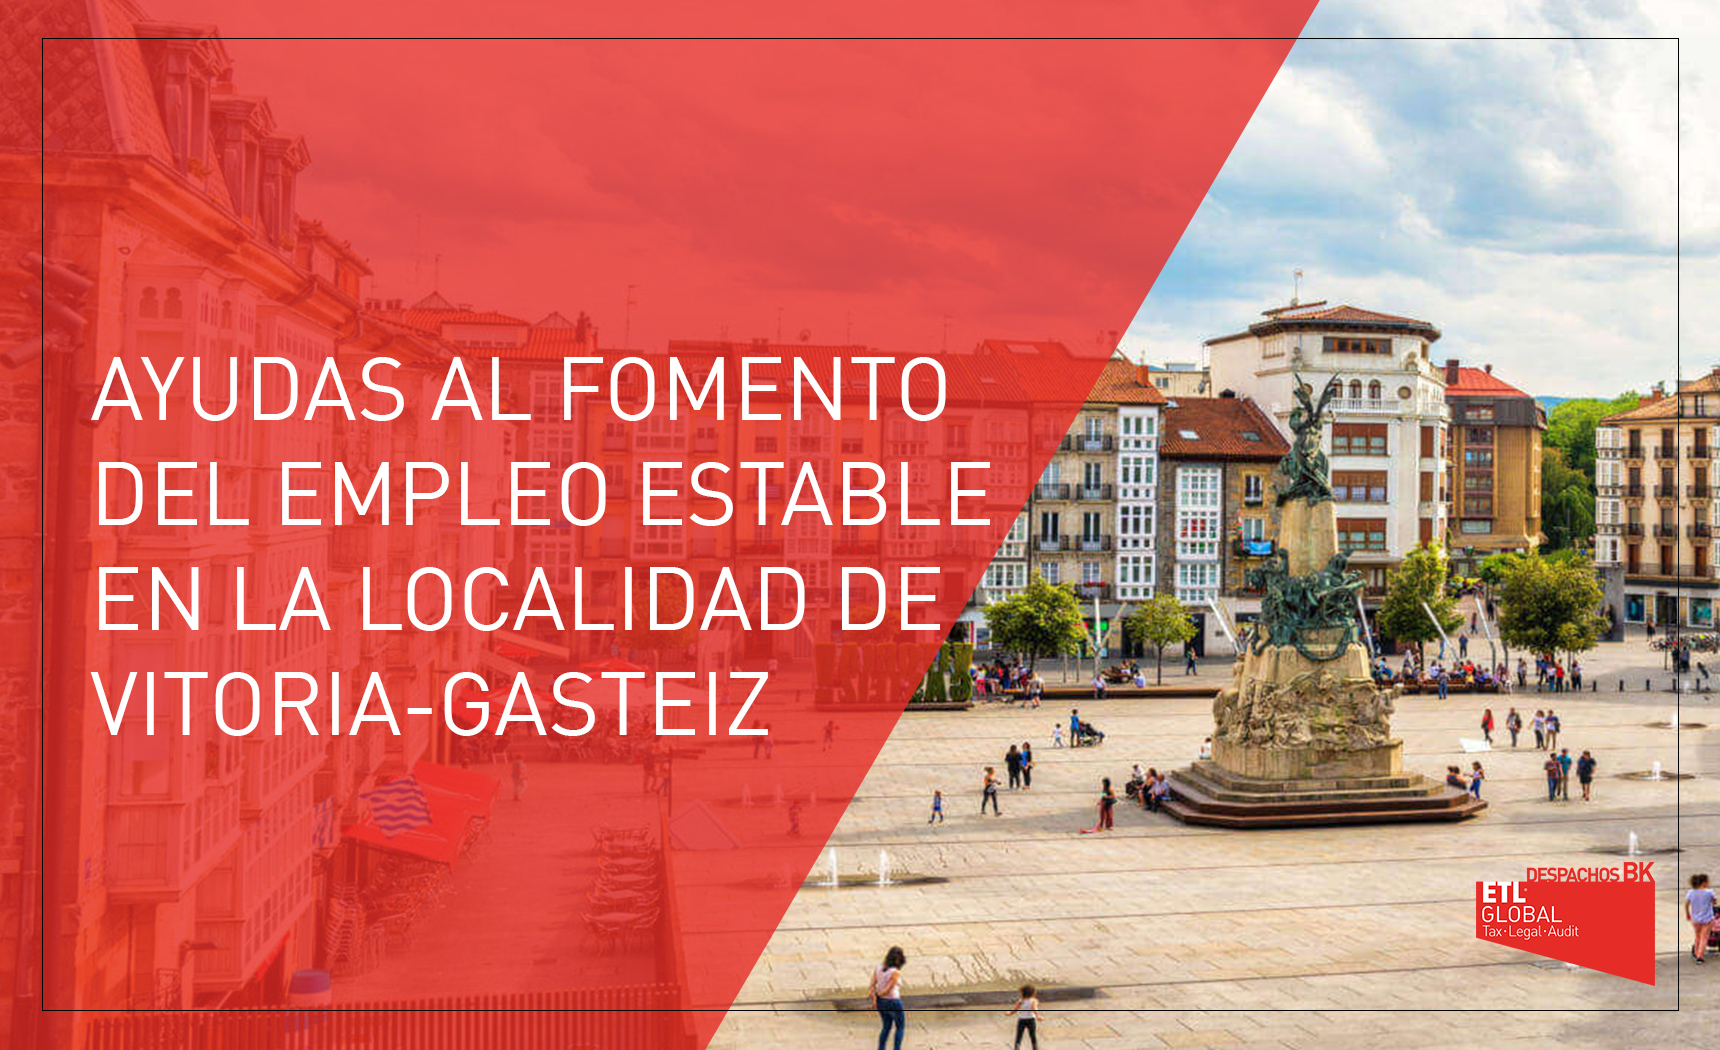 Ayudas al fomento del empleo estable en la localidad de Vitoria-Gasteiz